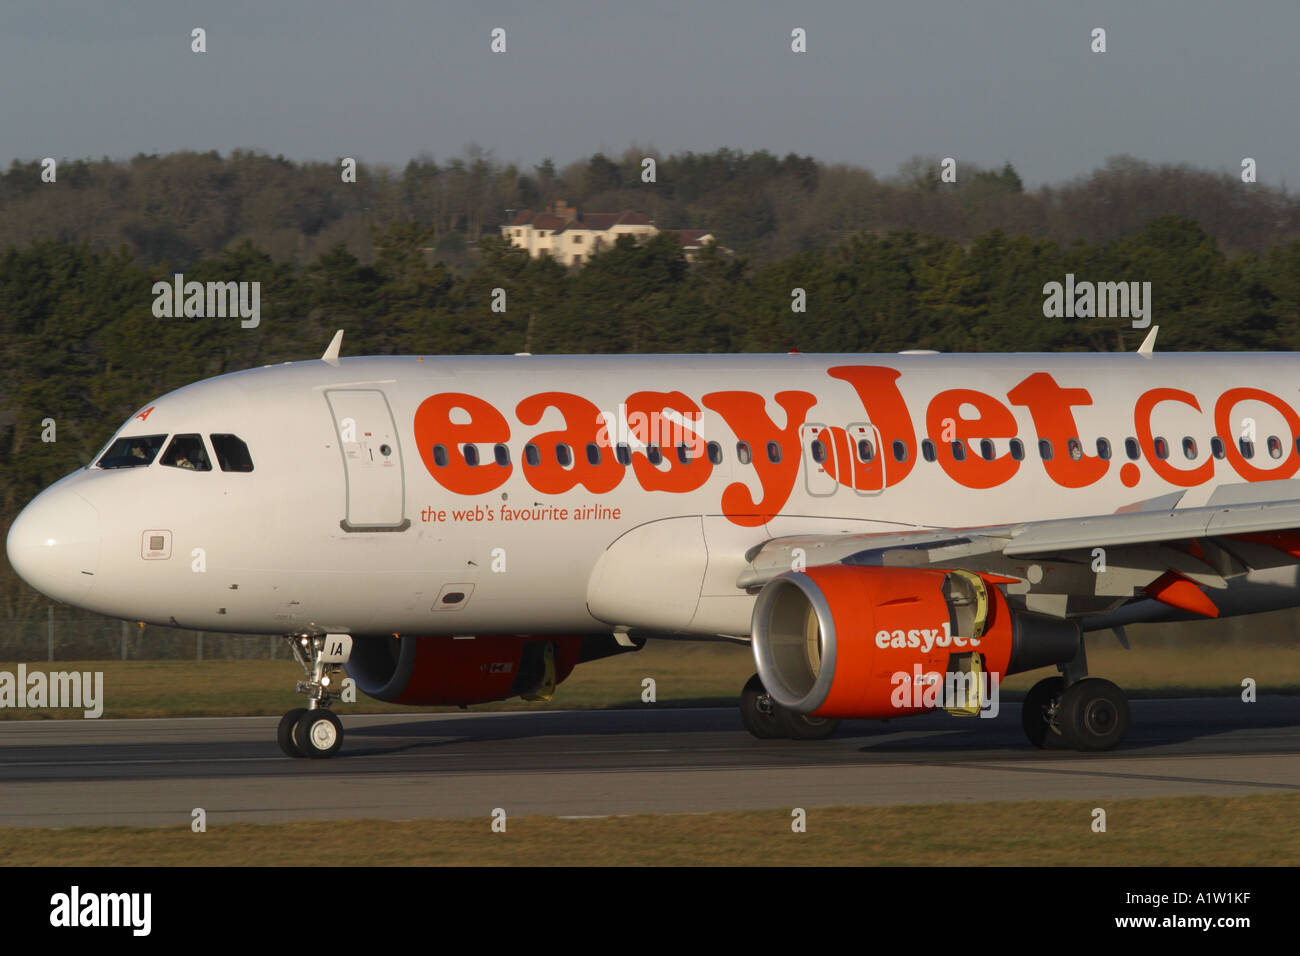 El presupuesto de las aerolíneas de bajo coste Easyjet Airbus A319 aterrizaje con inversor de empuje Foto de stock